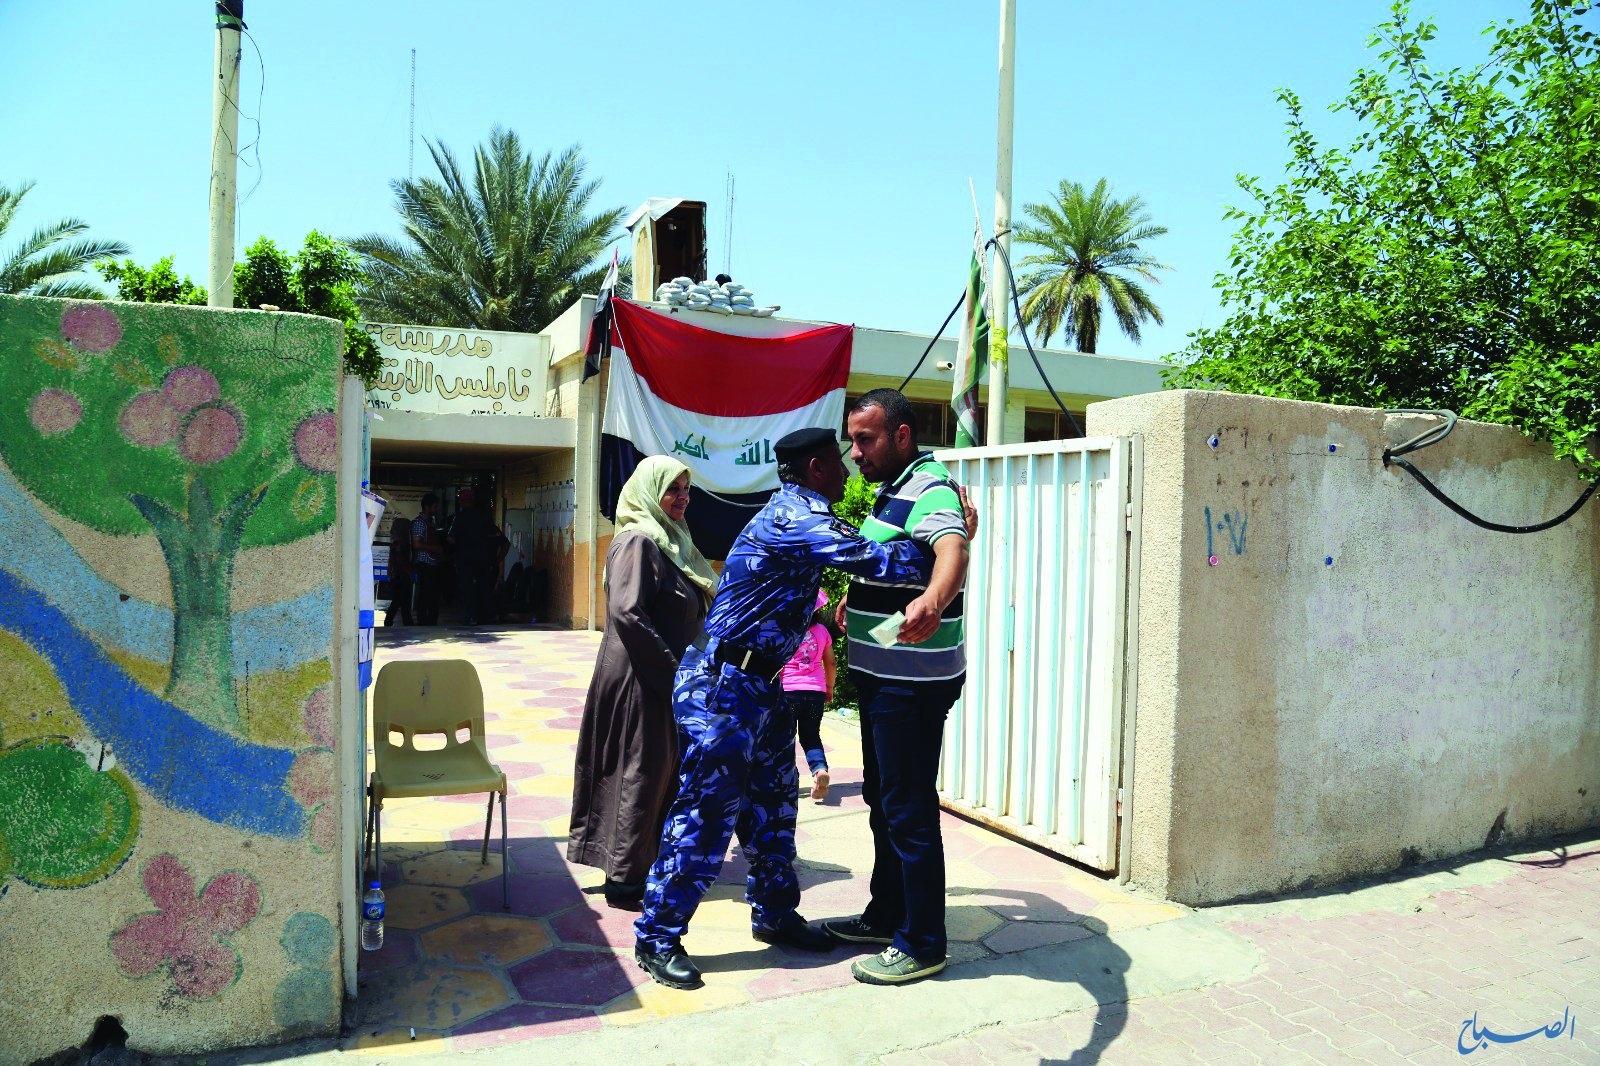 عجلات مظللة وبلا لوحات تحاول اقتحام مركز انتخابي شرق بغداد